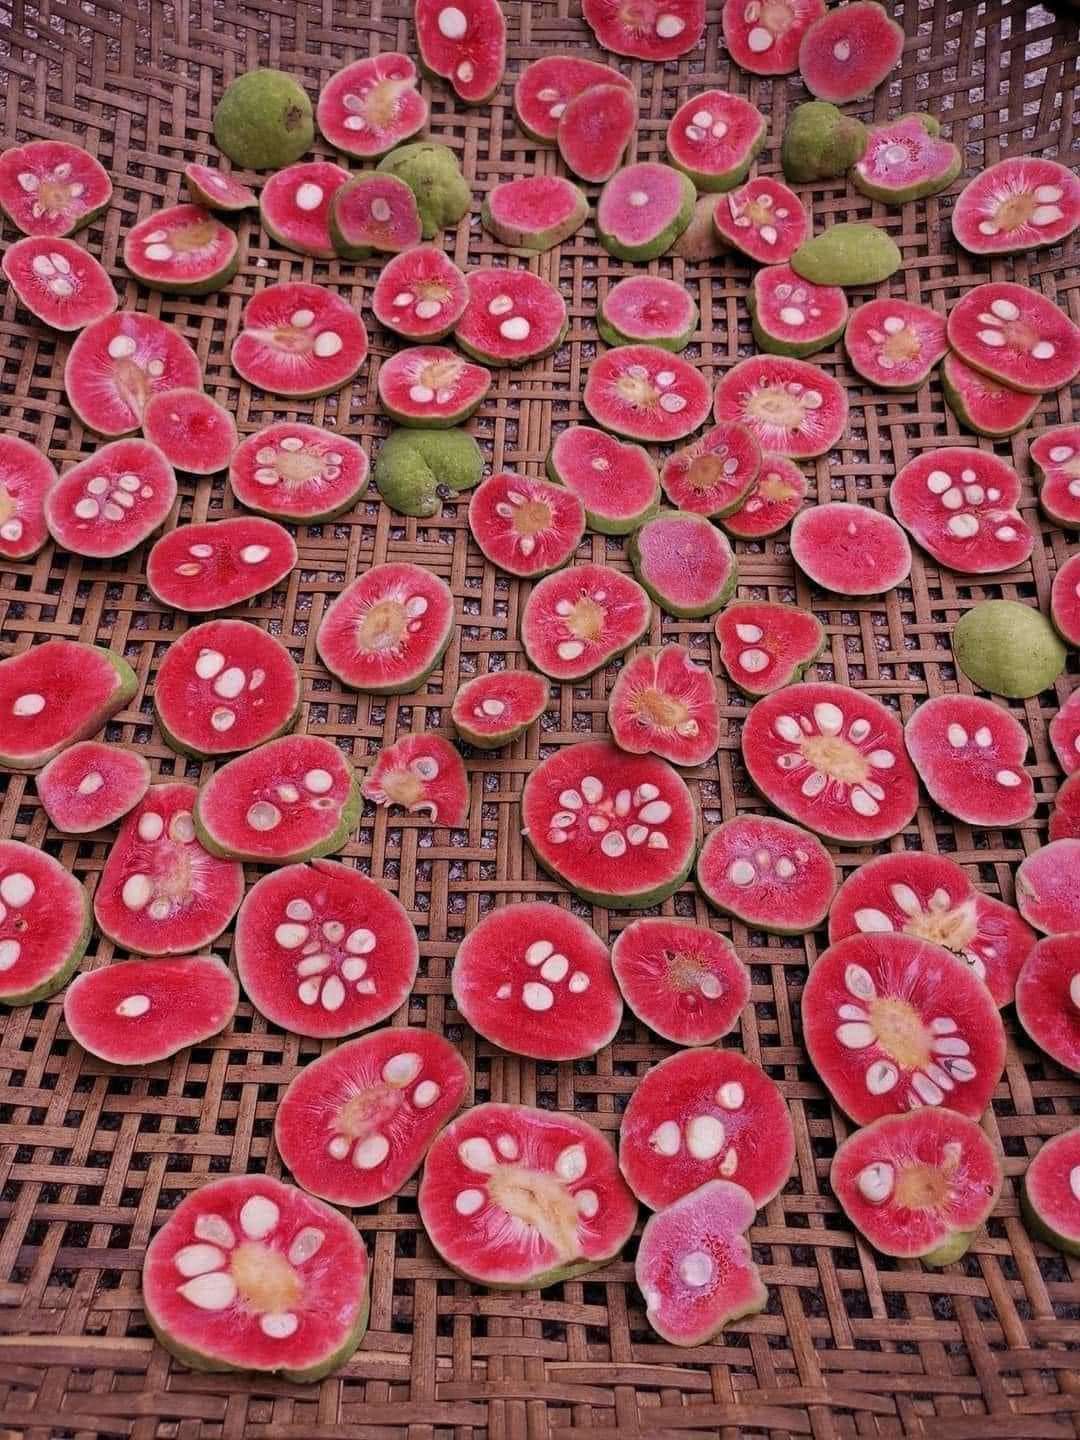 Loại quả vị chua chua, ruột hồng bắt mắt giá ngang trái cây nhập khẩu ở Hà Nội vẫn đắt khách-2